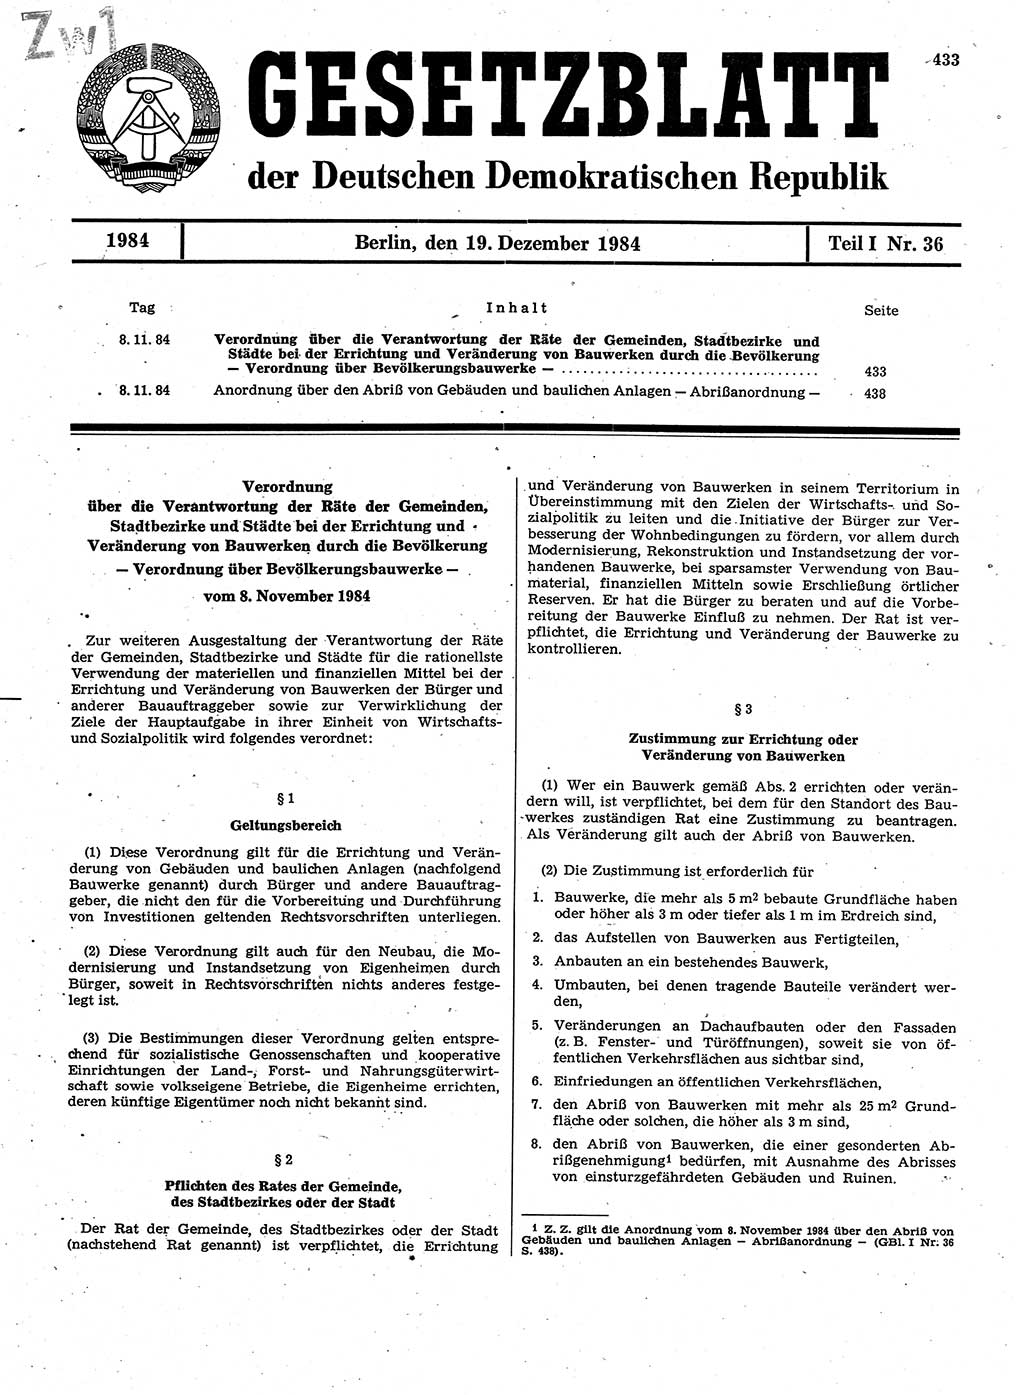 Gesetzblatt (GBl.) der Deutschen Demokratischen Republik (DDR) Teil Ⅰ 1984, Seite 433 (GBl. DDR Ⅰ 1984, S. 433)